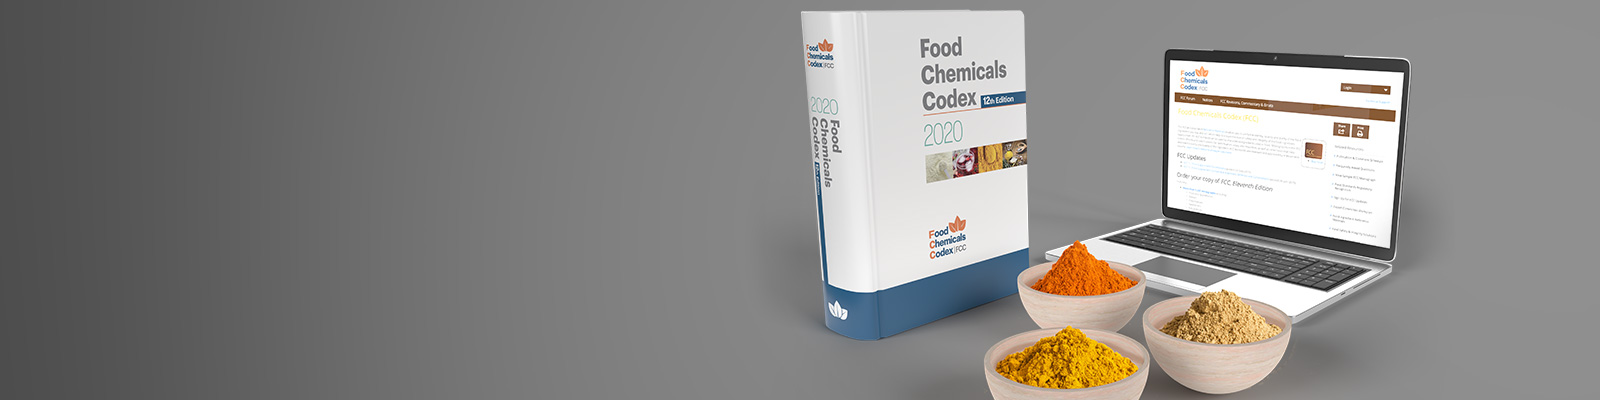 foods chemicals codex